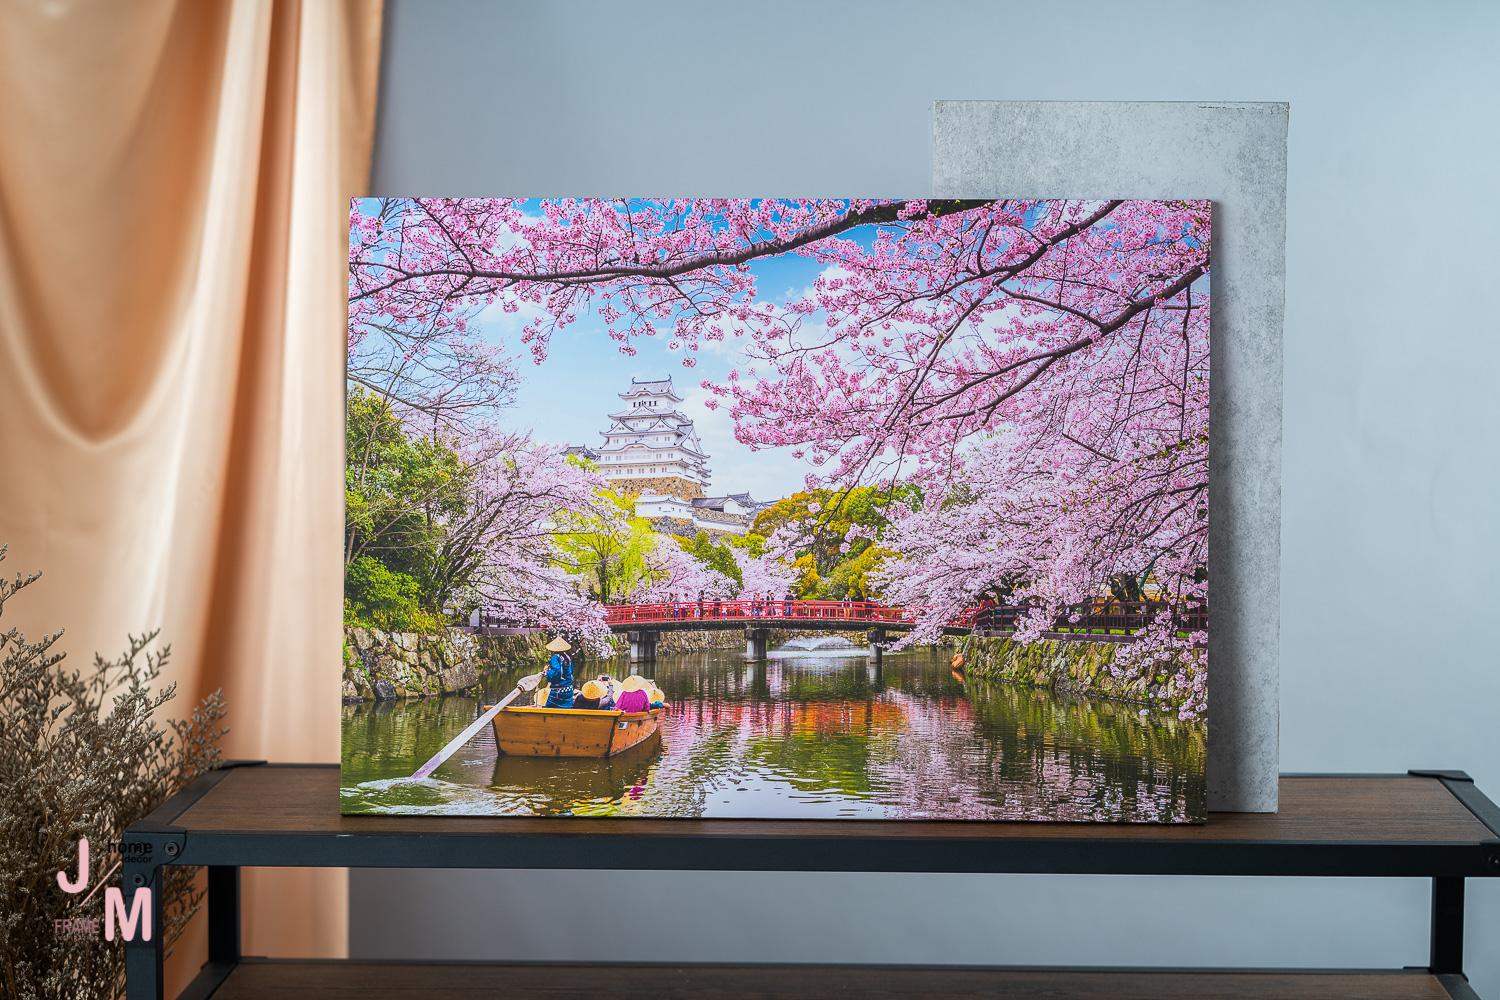 JM Frame รูปติดผนัง ภาพปราสาทฮิเมจิ ซากุระ ประเทศญี่ปุ่น ภาพพิมพ์ แคนวาสแท้ กรอบรูปติดผนัง ภาพติดผนัง กรอบรูปแต่งบ้าน ตกแต่งผนังห้อง  ของแต่งบ้าน อุปกรณ์แต่งบ้าน พร้อมแขวนได้ทันที รุ่น C-0009 เลือกได้ 2 ขนาด